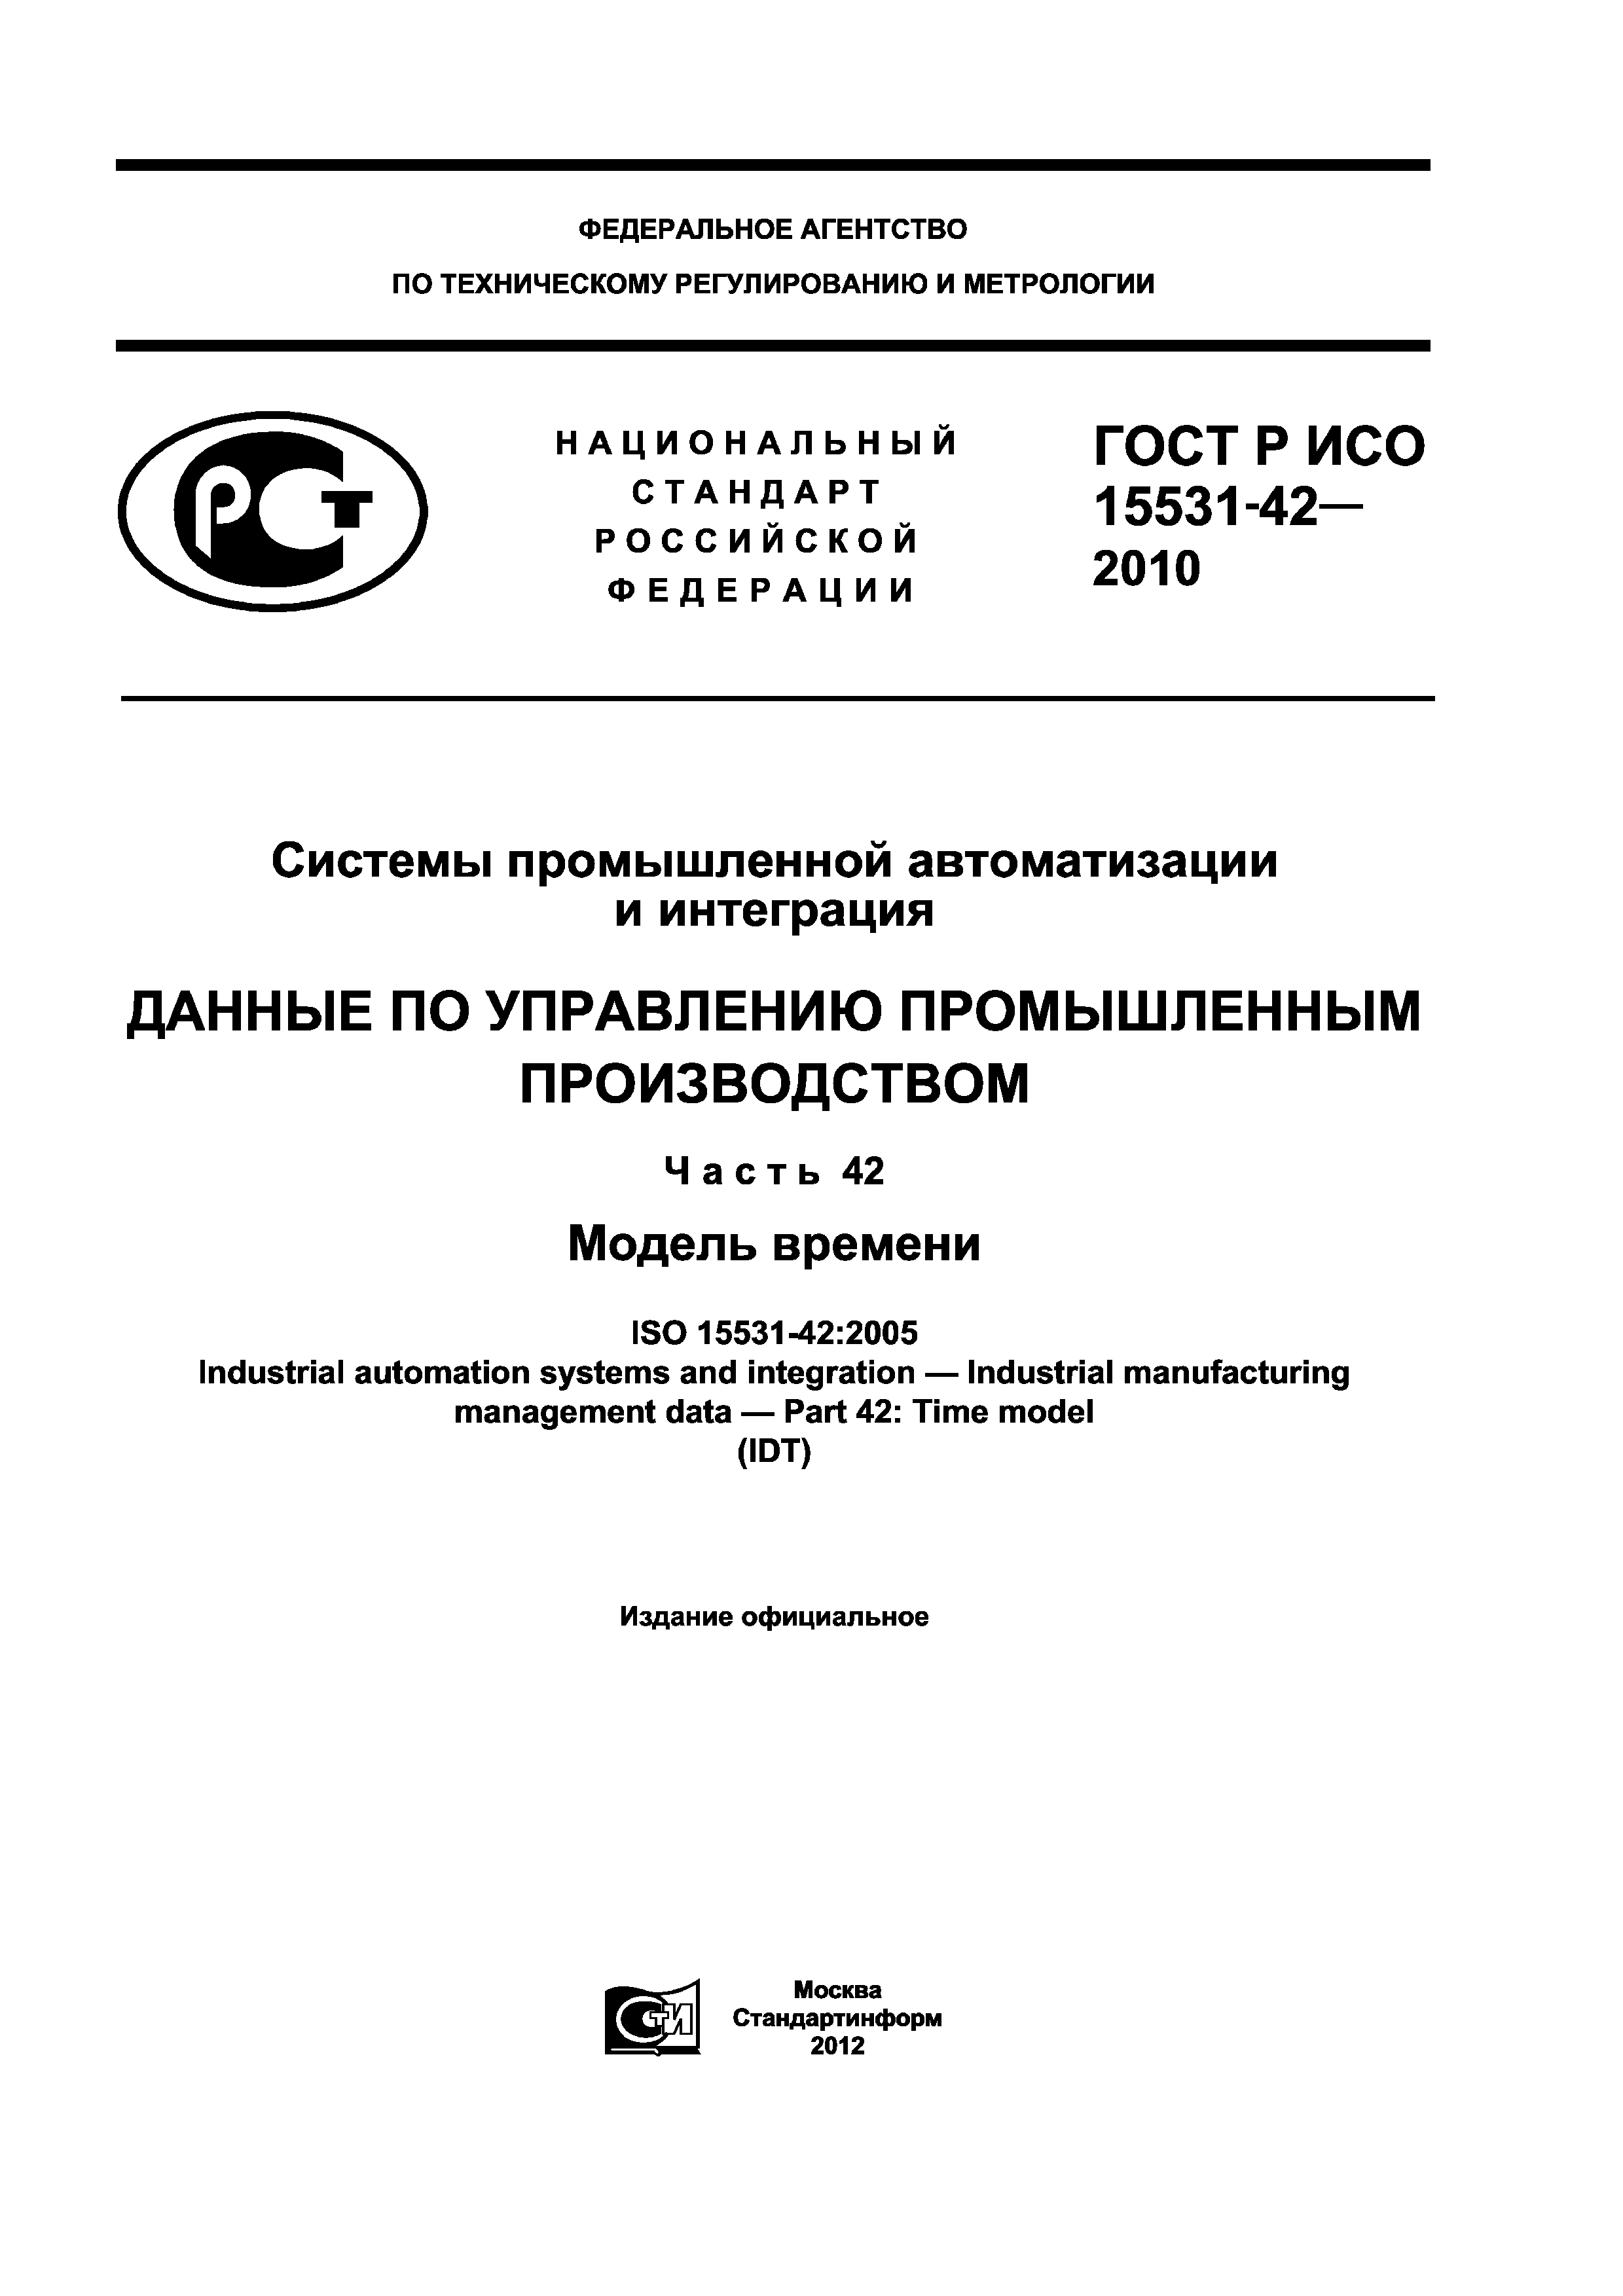 ГОСТ Р ИСО 15531-42-2010